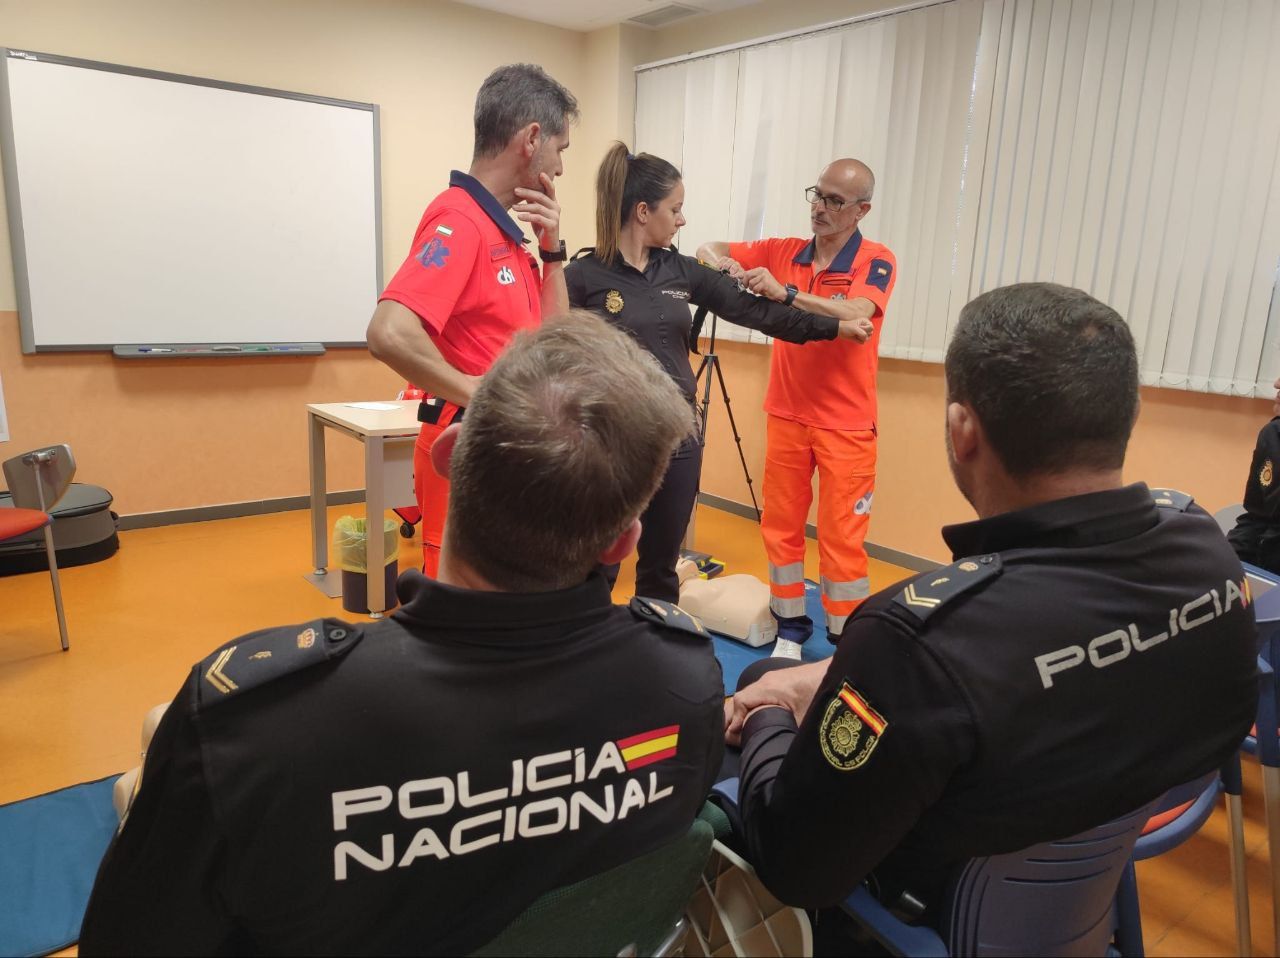 Jornada formativa a policías nacionales sobre técnicas para salvar vidas en El Puerto.